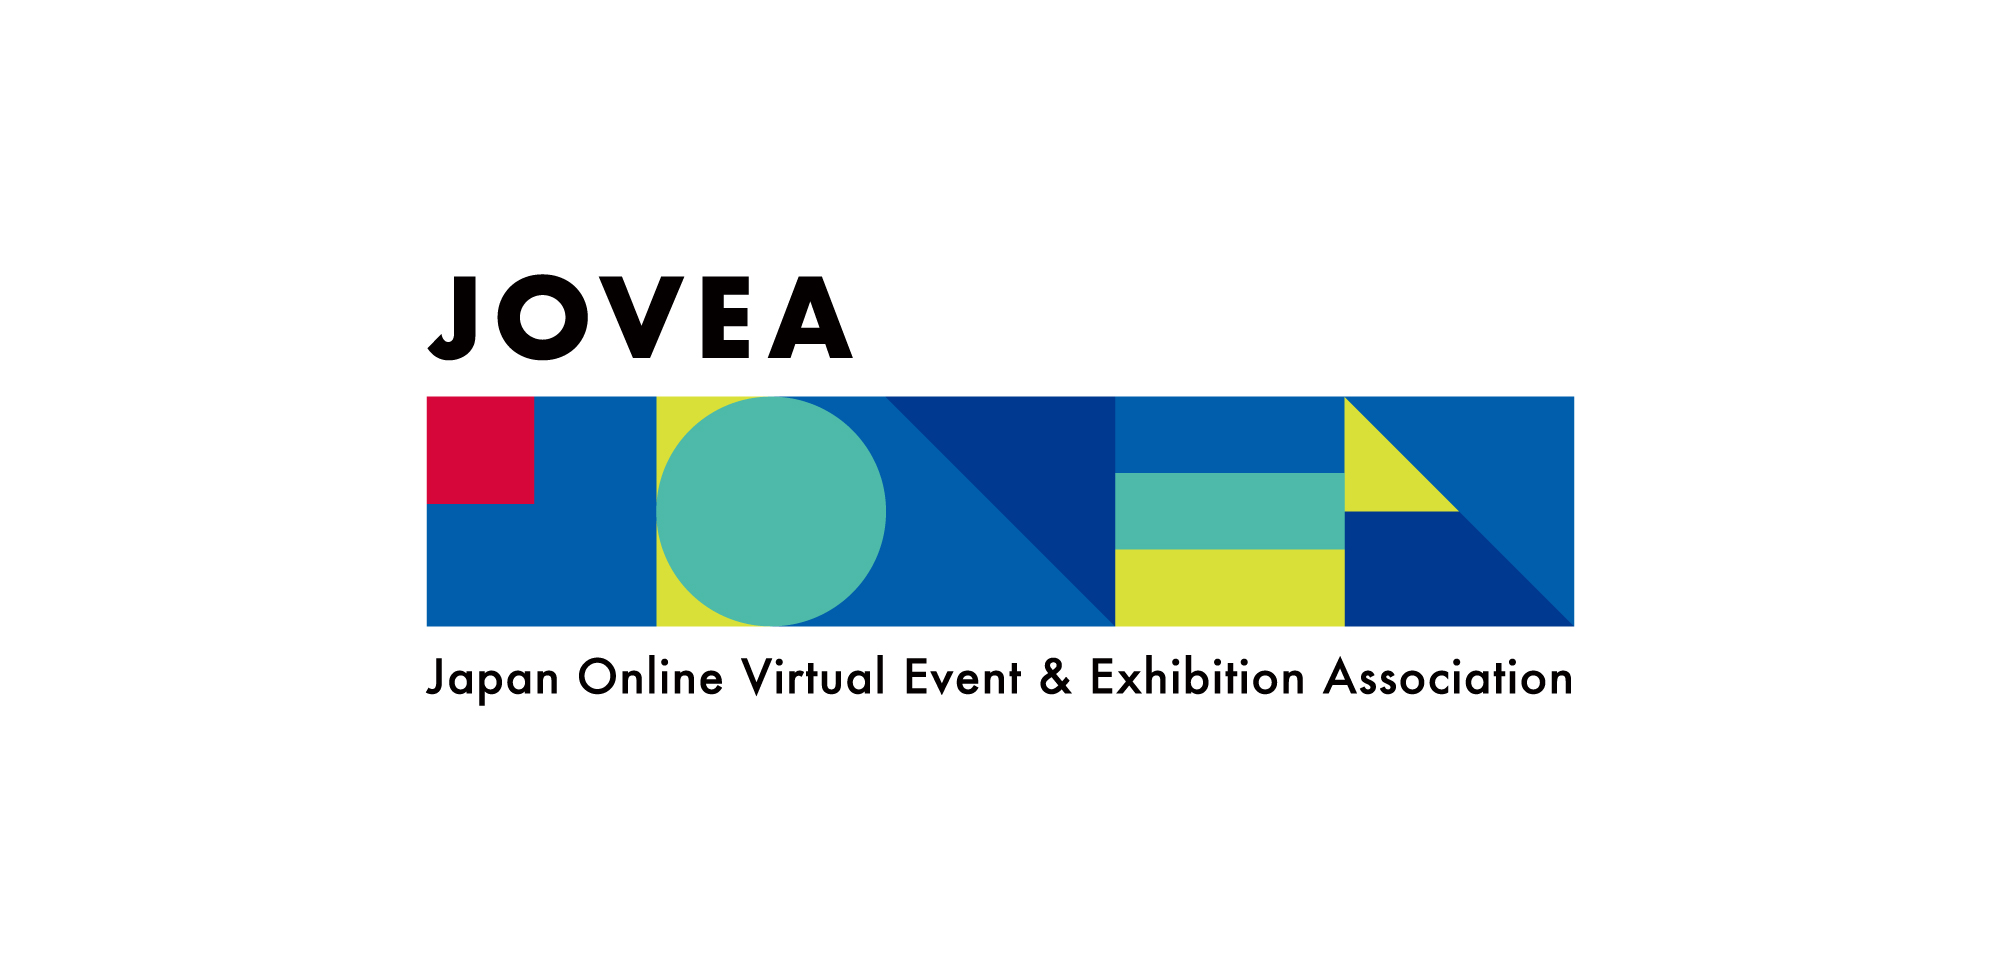 オンライン・バーチャルの可能性を拡げ、リアルイベントや展示会のDXを推進することを目的に、JOVEA-日本オンラインバーチャルイベント展示会協会を設立。